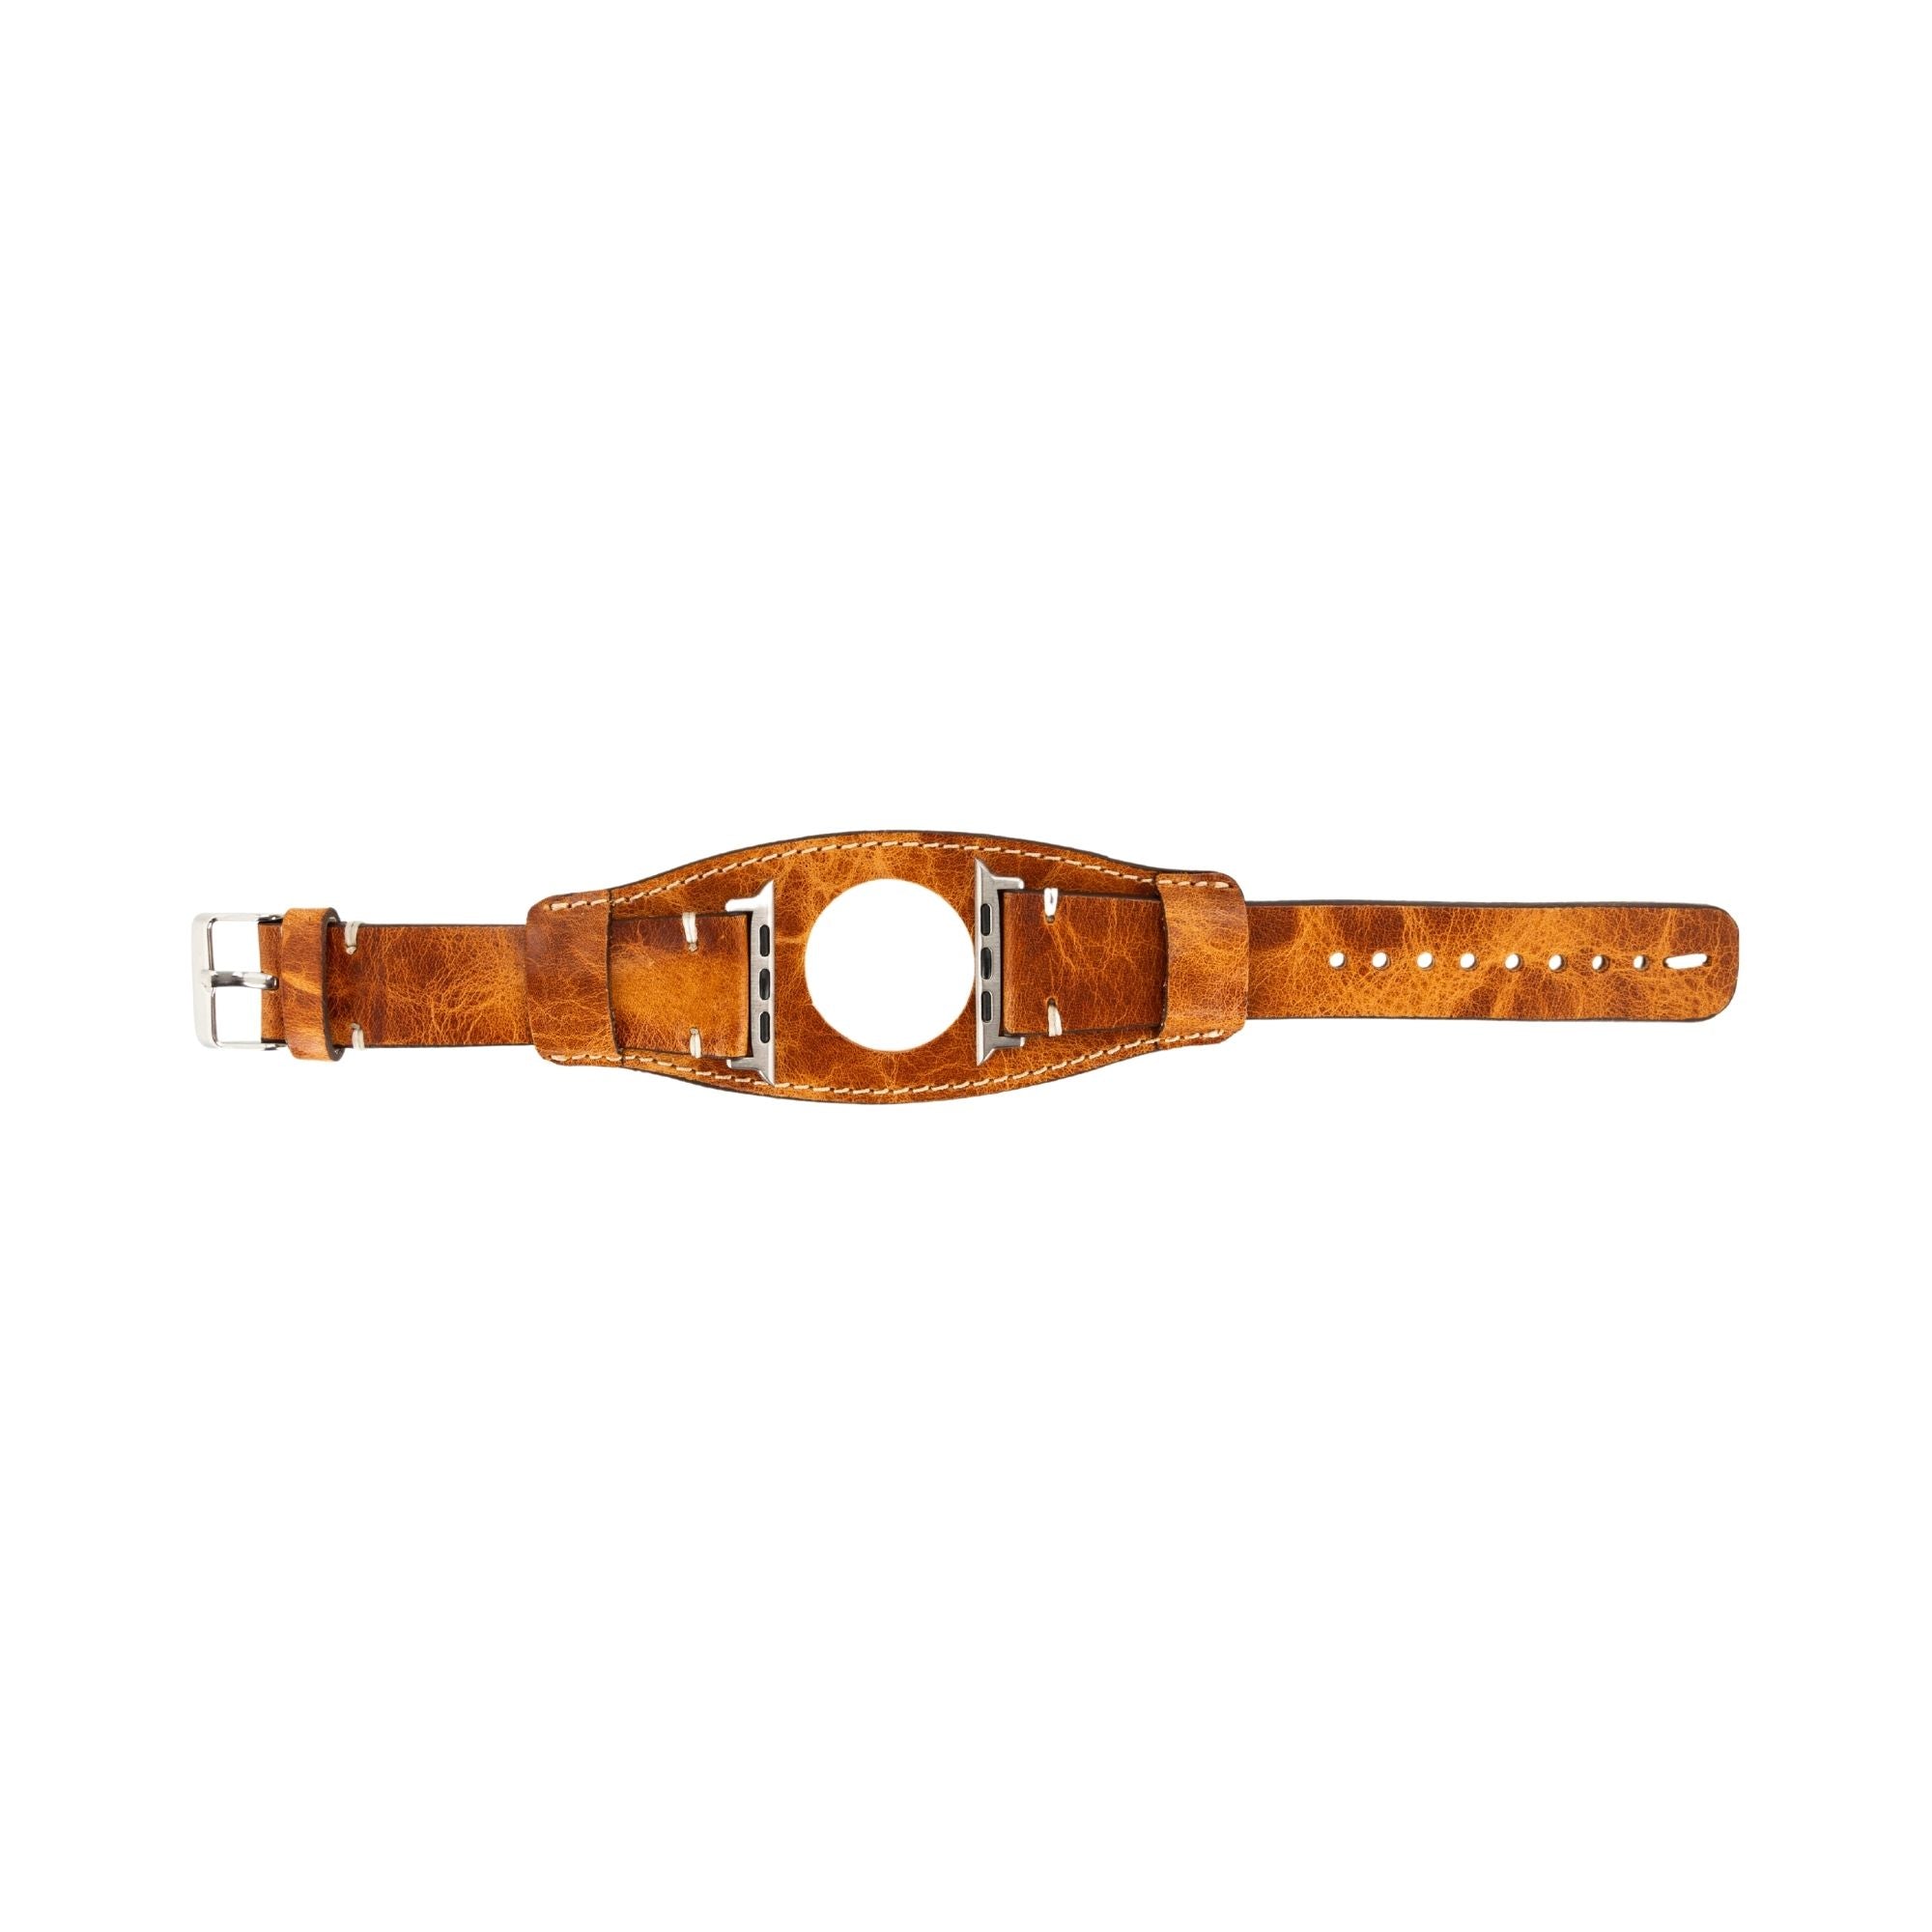 Distressed leather watch strap Bund band Brown Wide cuff watch band men  18-24mm | eBay